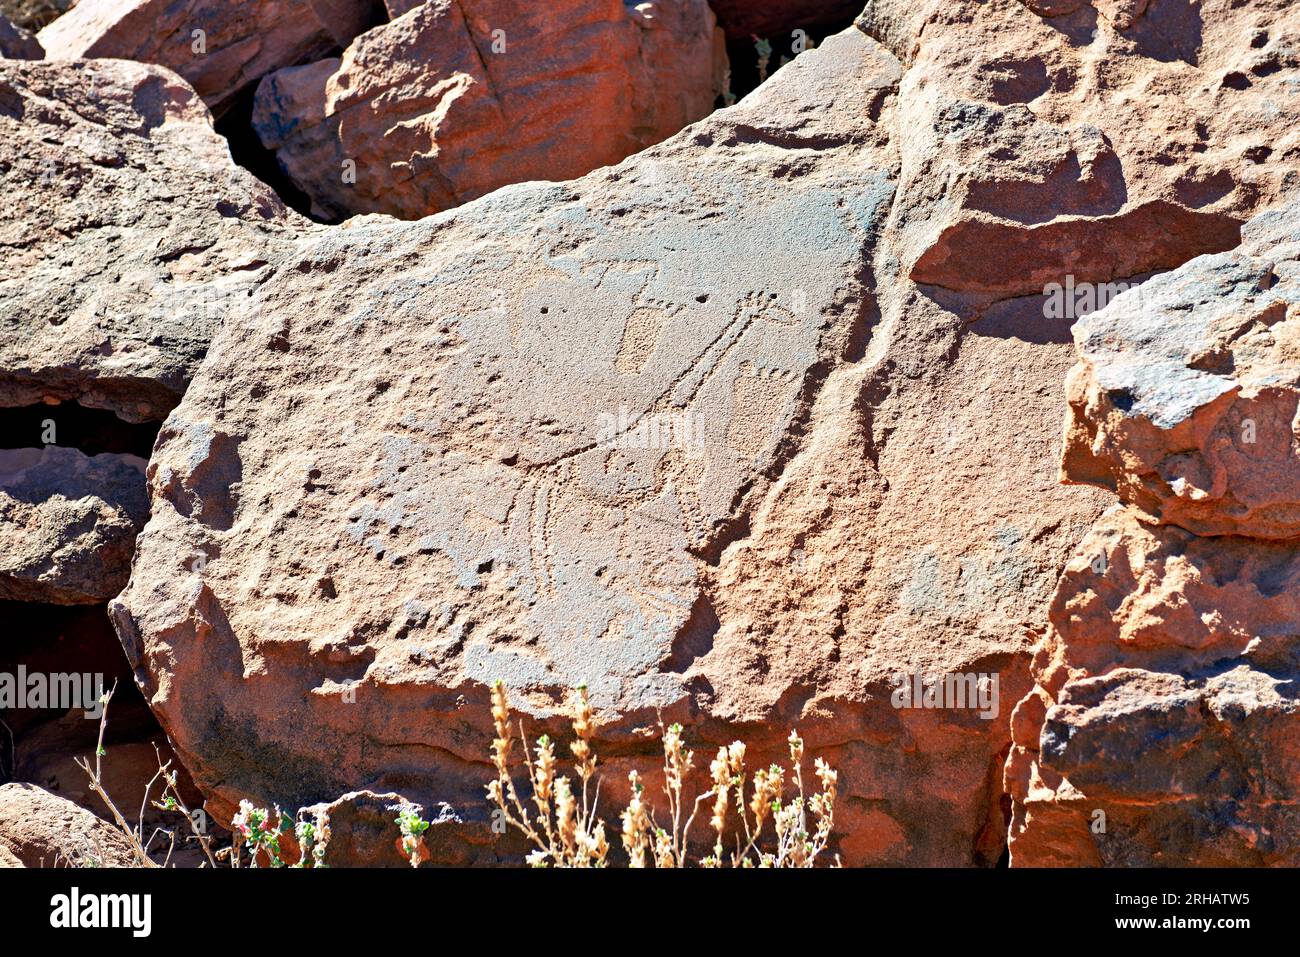 Namibia. Incisioni rupestri preistoriche nel sito archeologico di Twyfelfontein, regione di Kunene Foto Stock